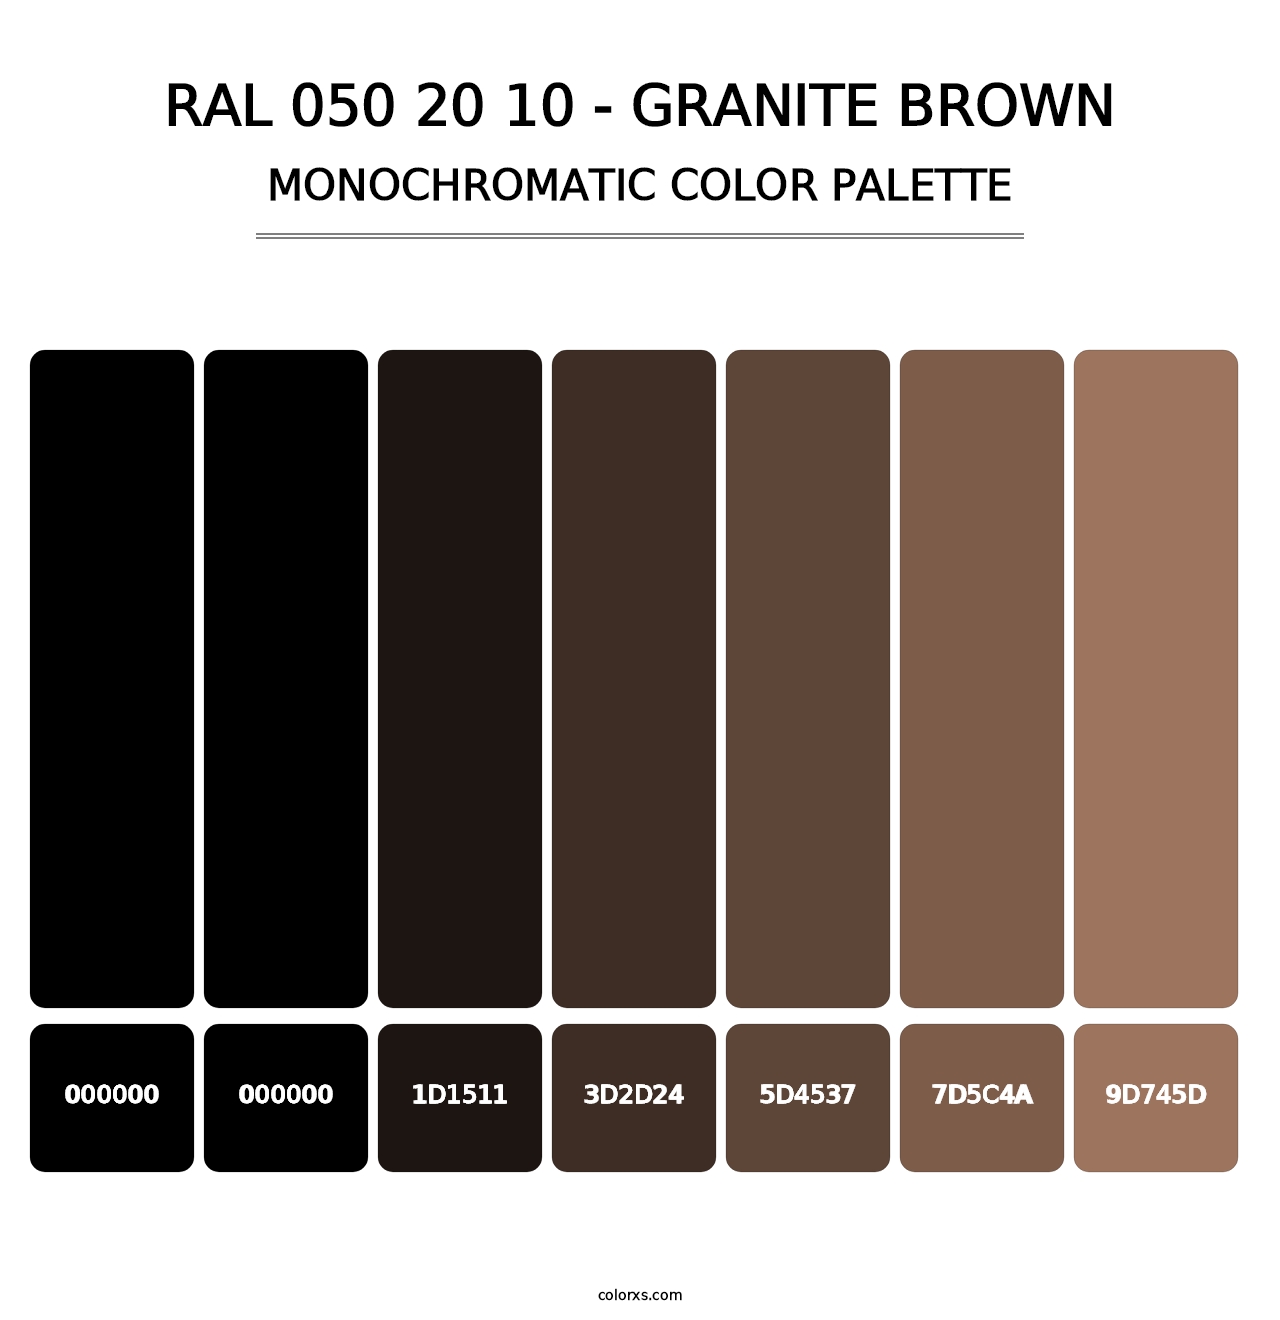 RAL 050 20 10 - Granite Brown - Monochromatic Color Palette